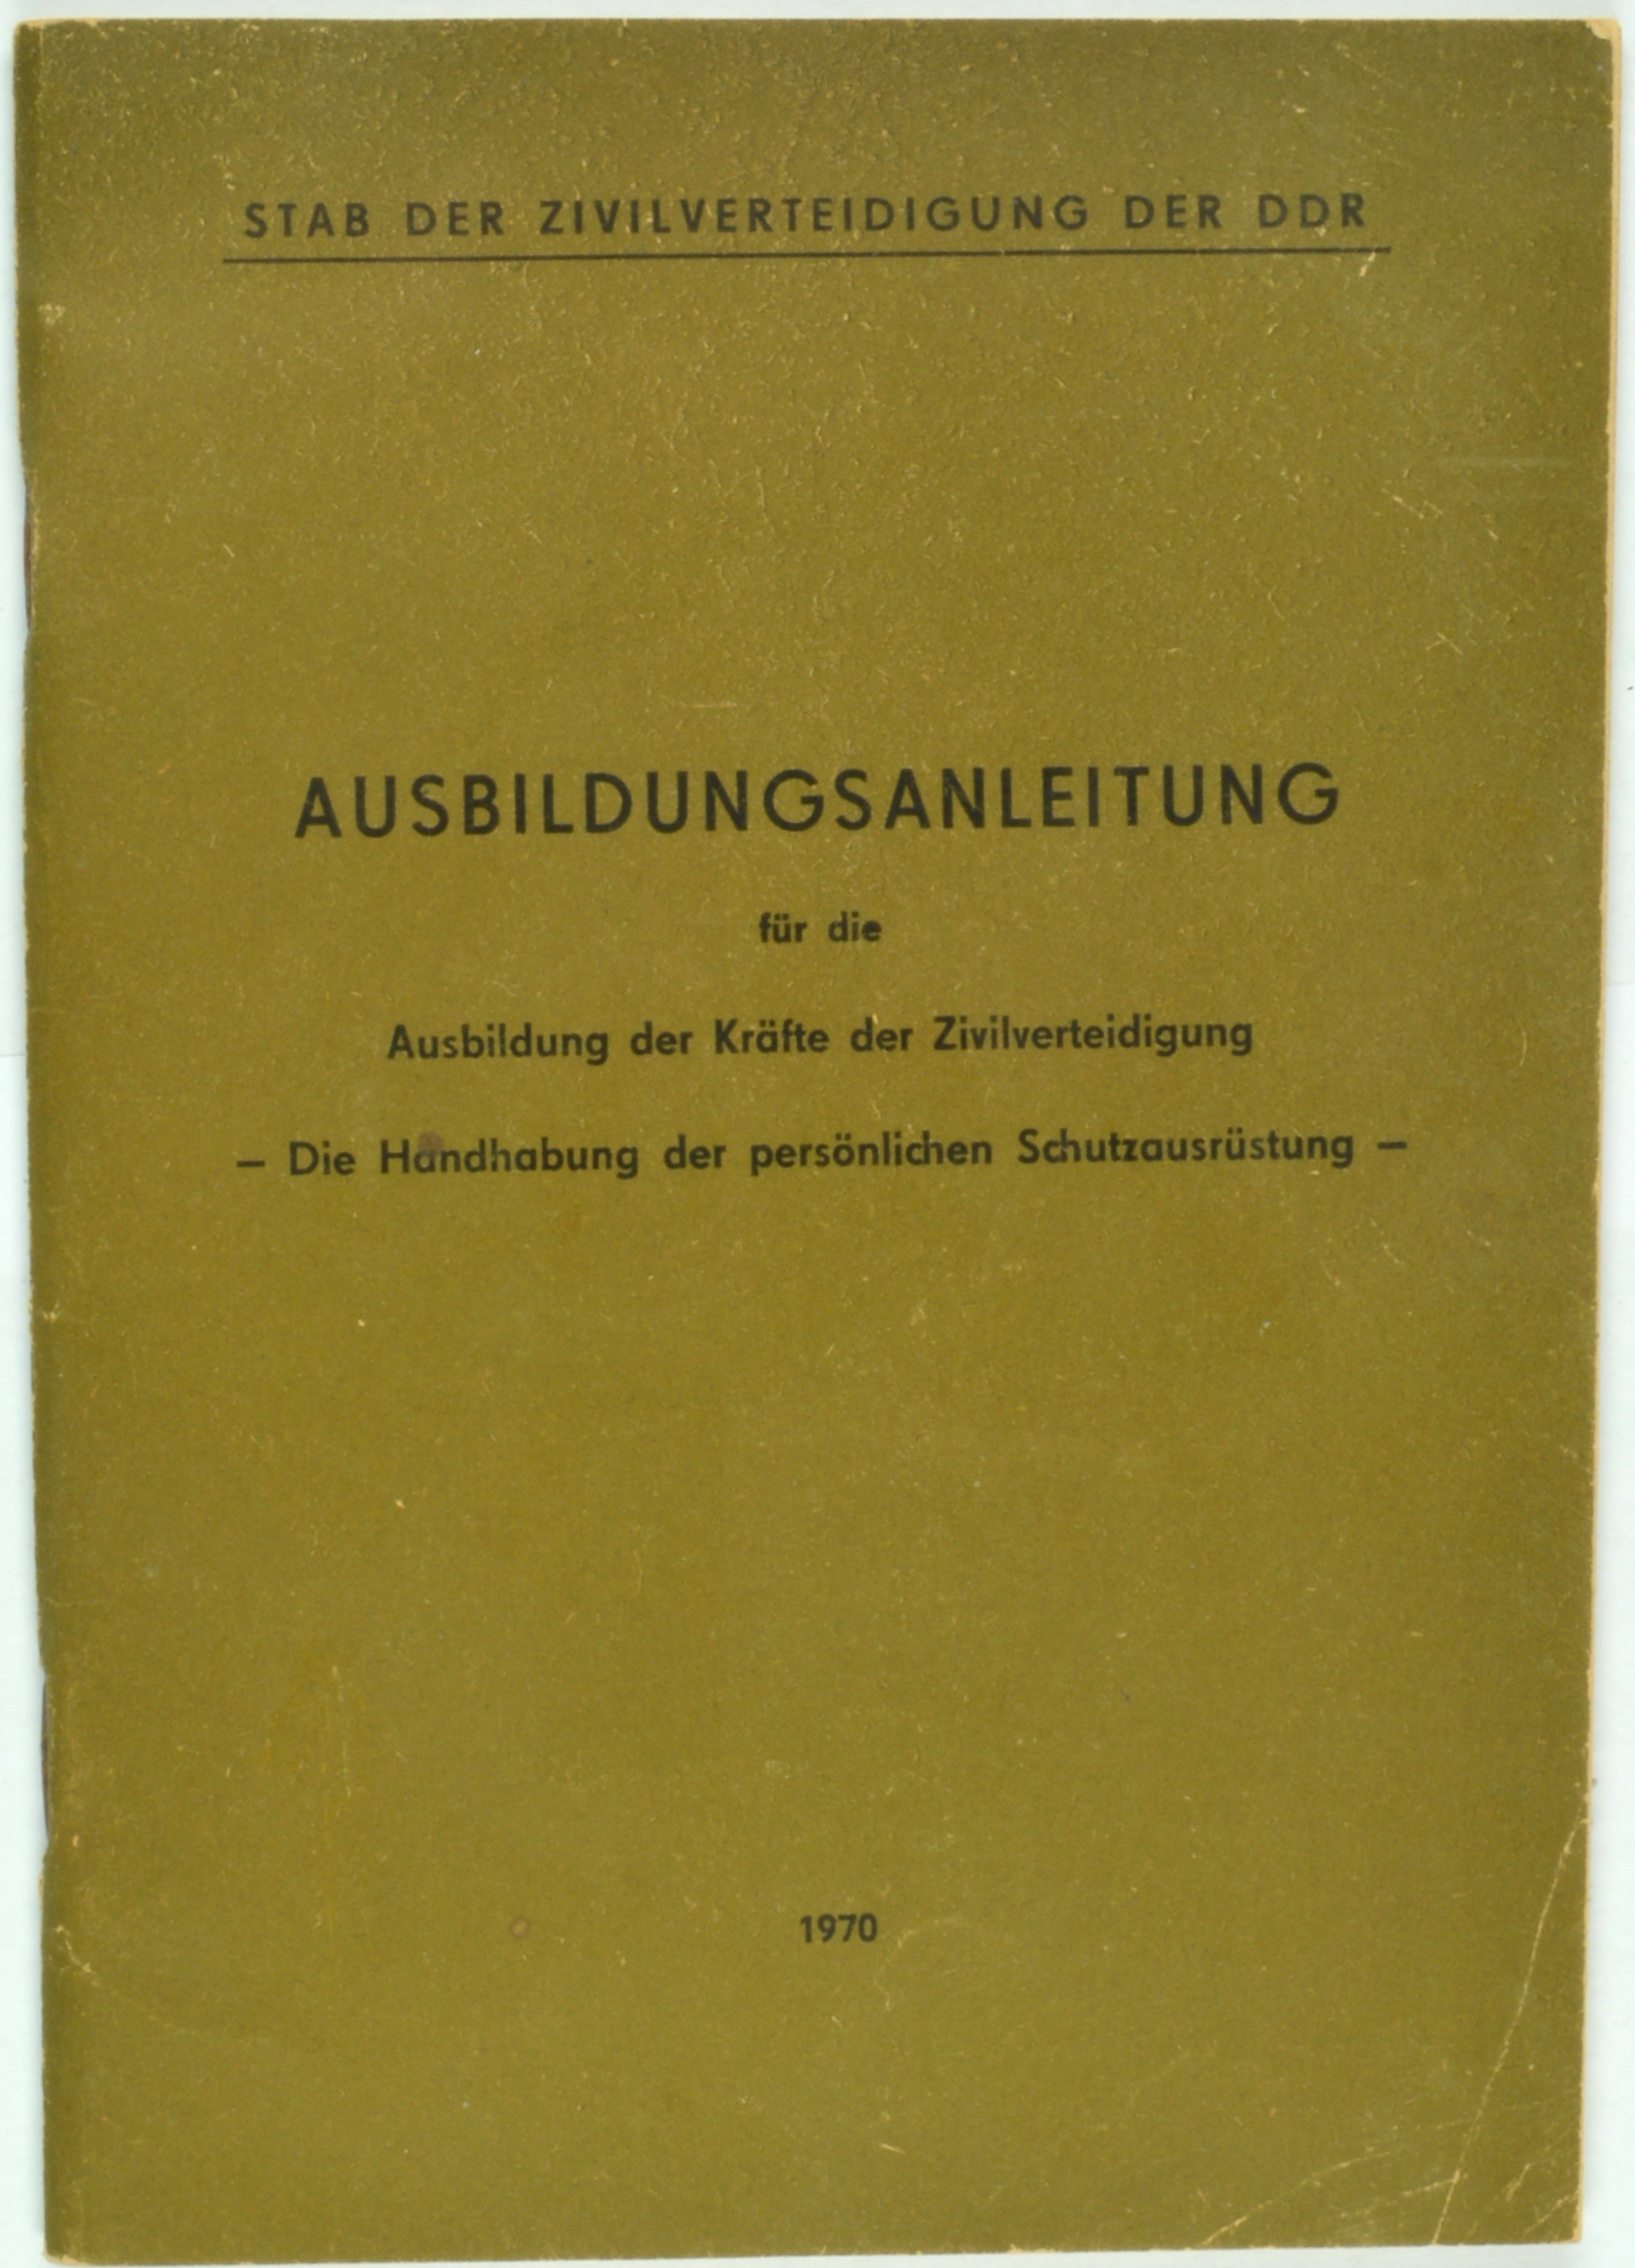 Broschüre "Ausbildungsanleitung für die Ausbildung der Kräfte der Zivilverteidigung" (DDR Geschichtsmuseum im Dokumentationszentrum Perleberg CC BY-SA)